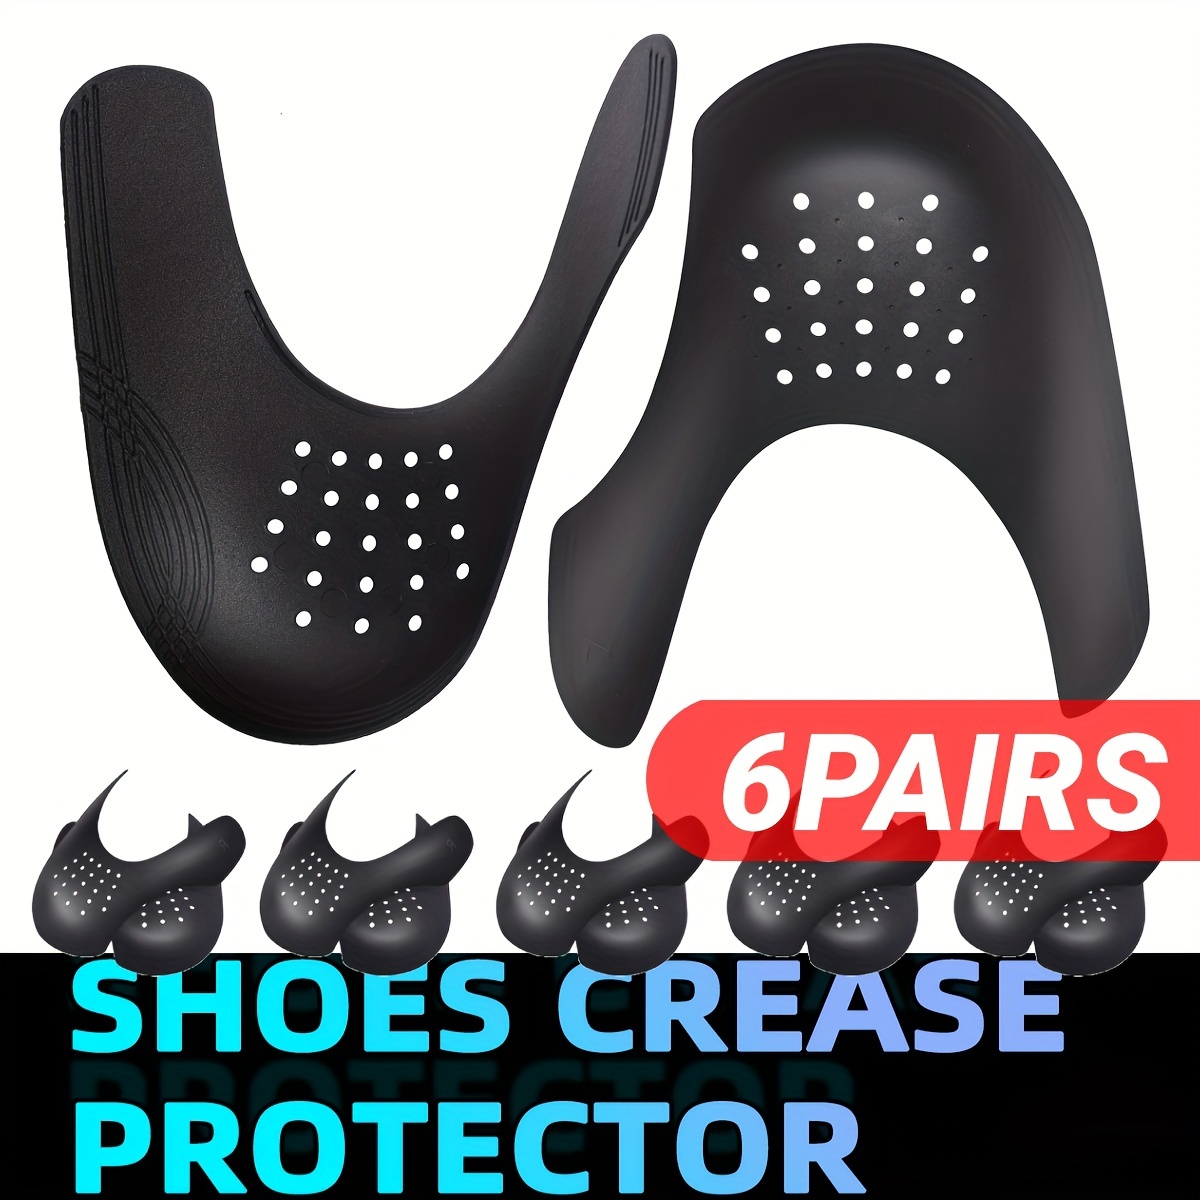 Si quieres proteger tus zapatillas de las arrugas, hazlo con los guard